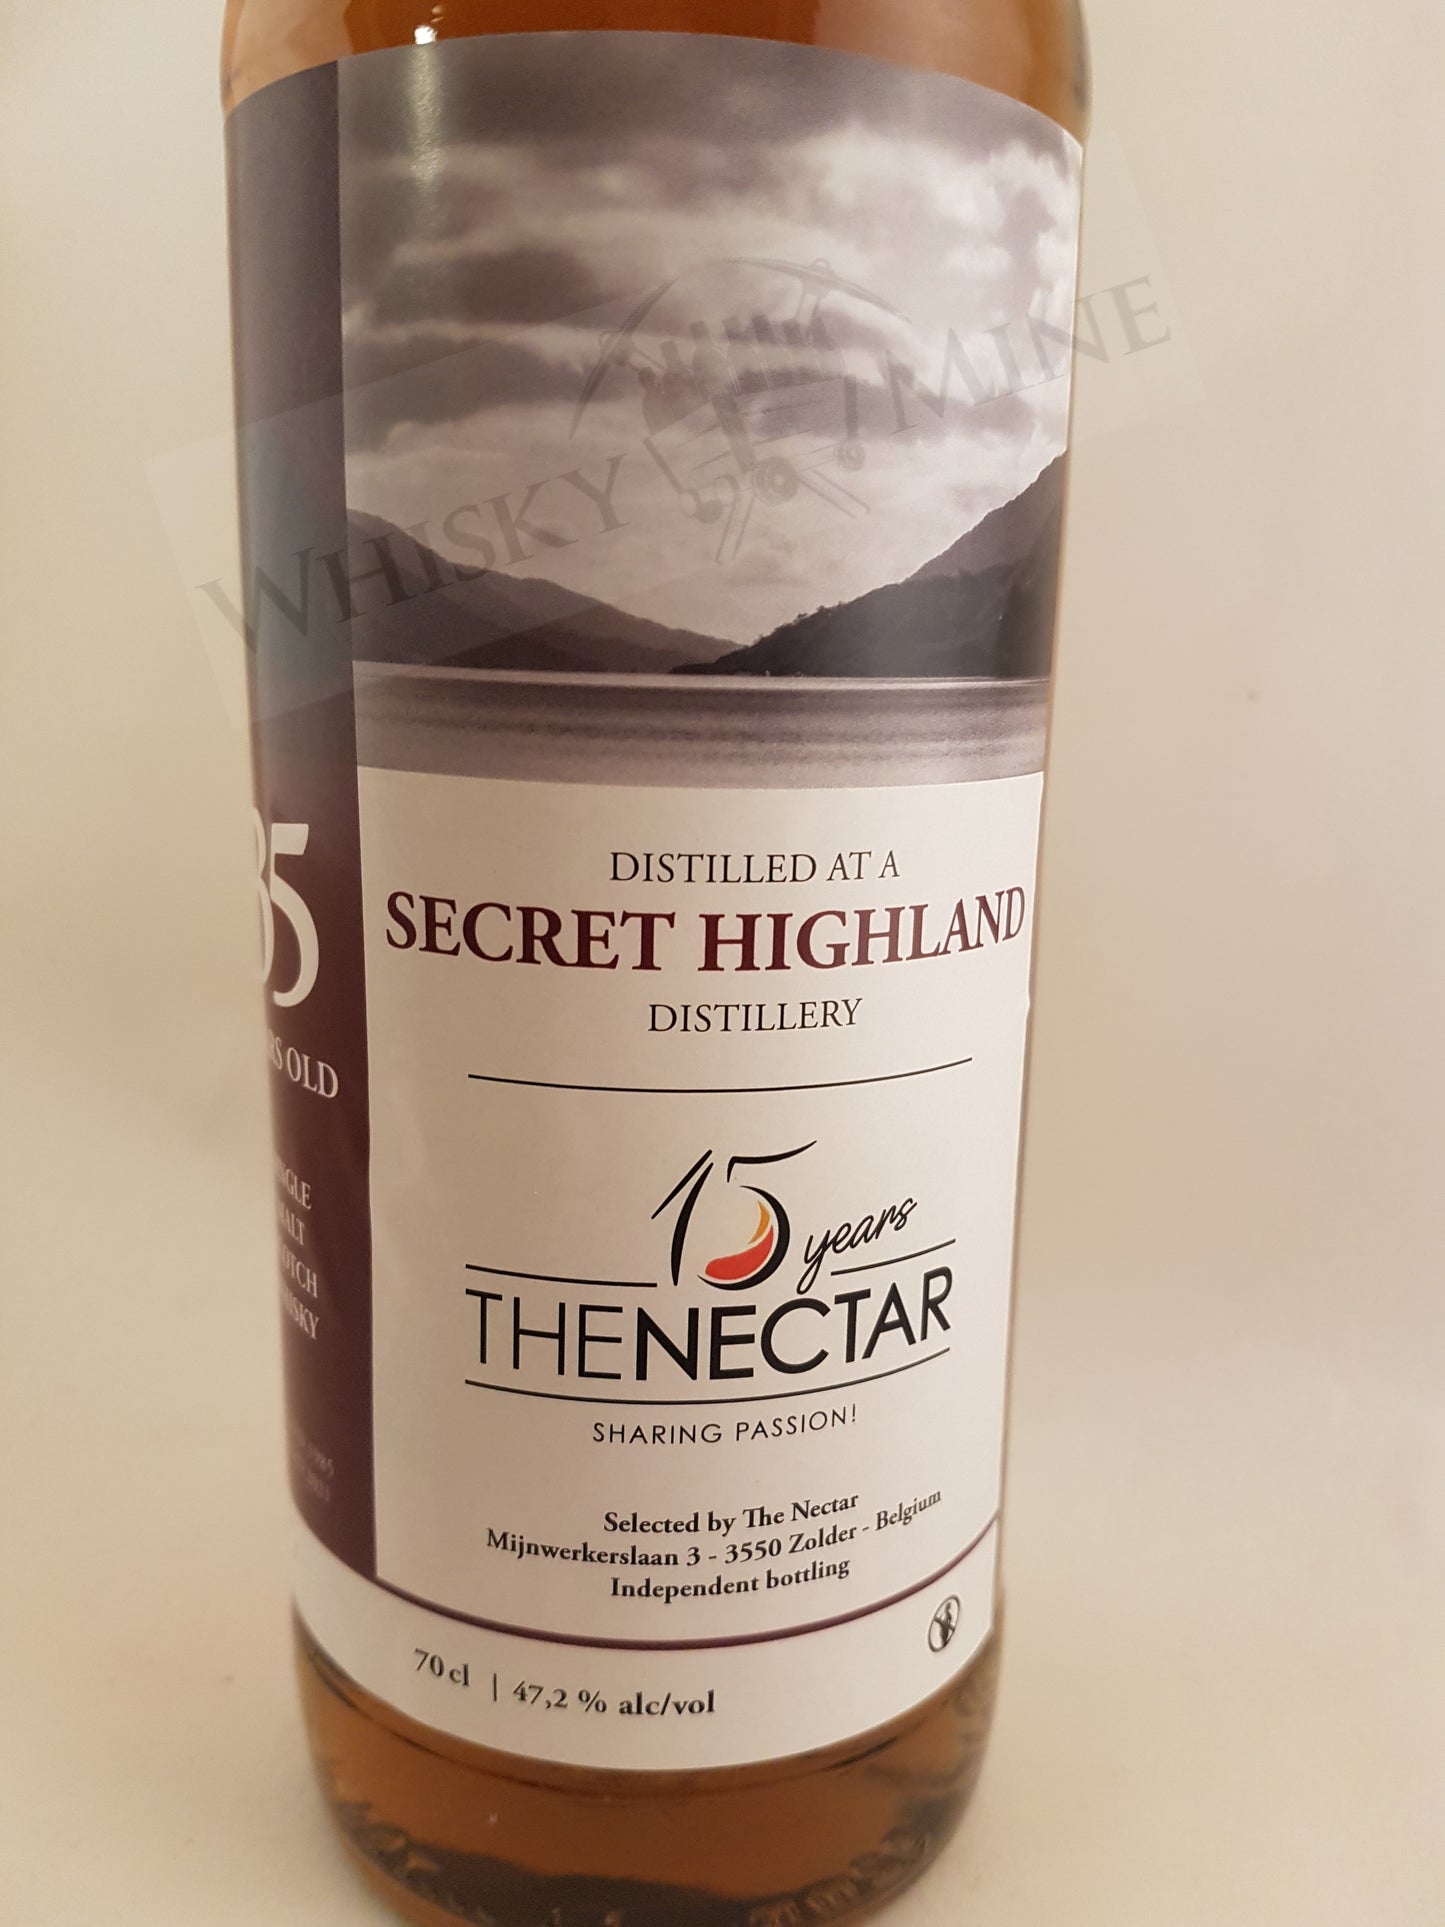 Secret Highland 1985-2021 35Y 47.2% 15Y The Nectar